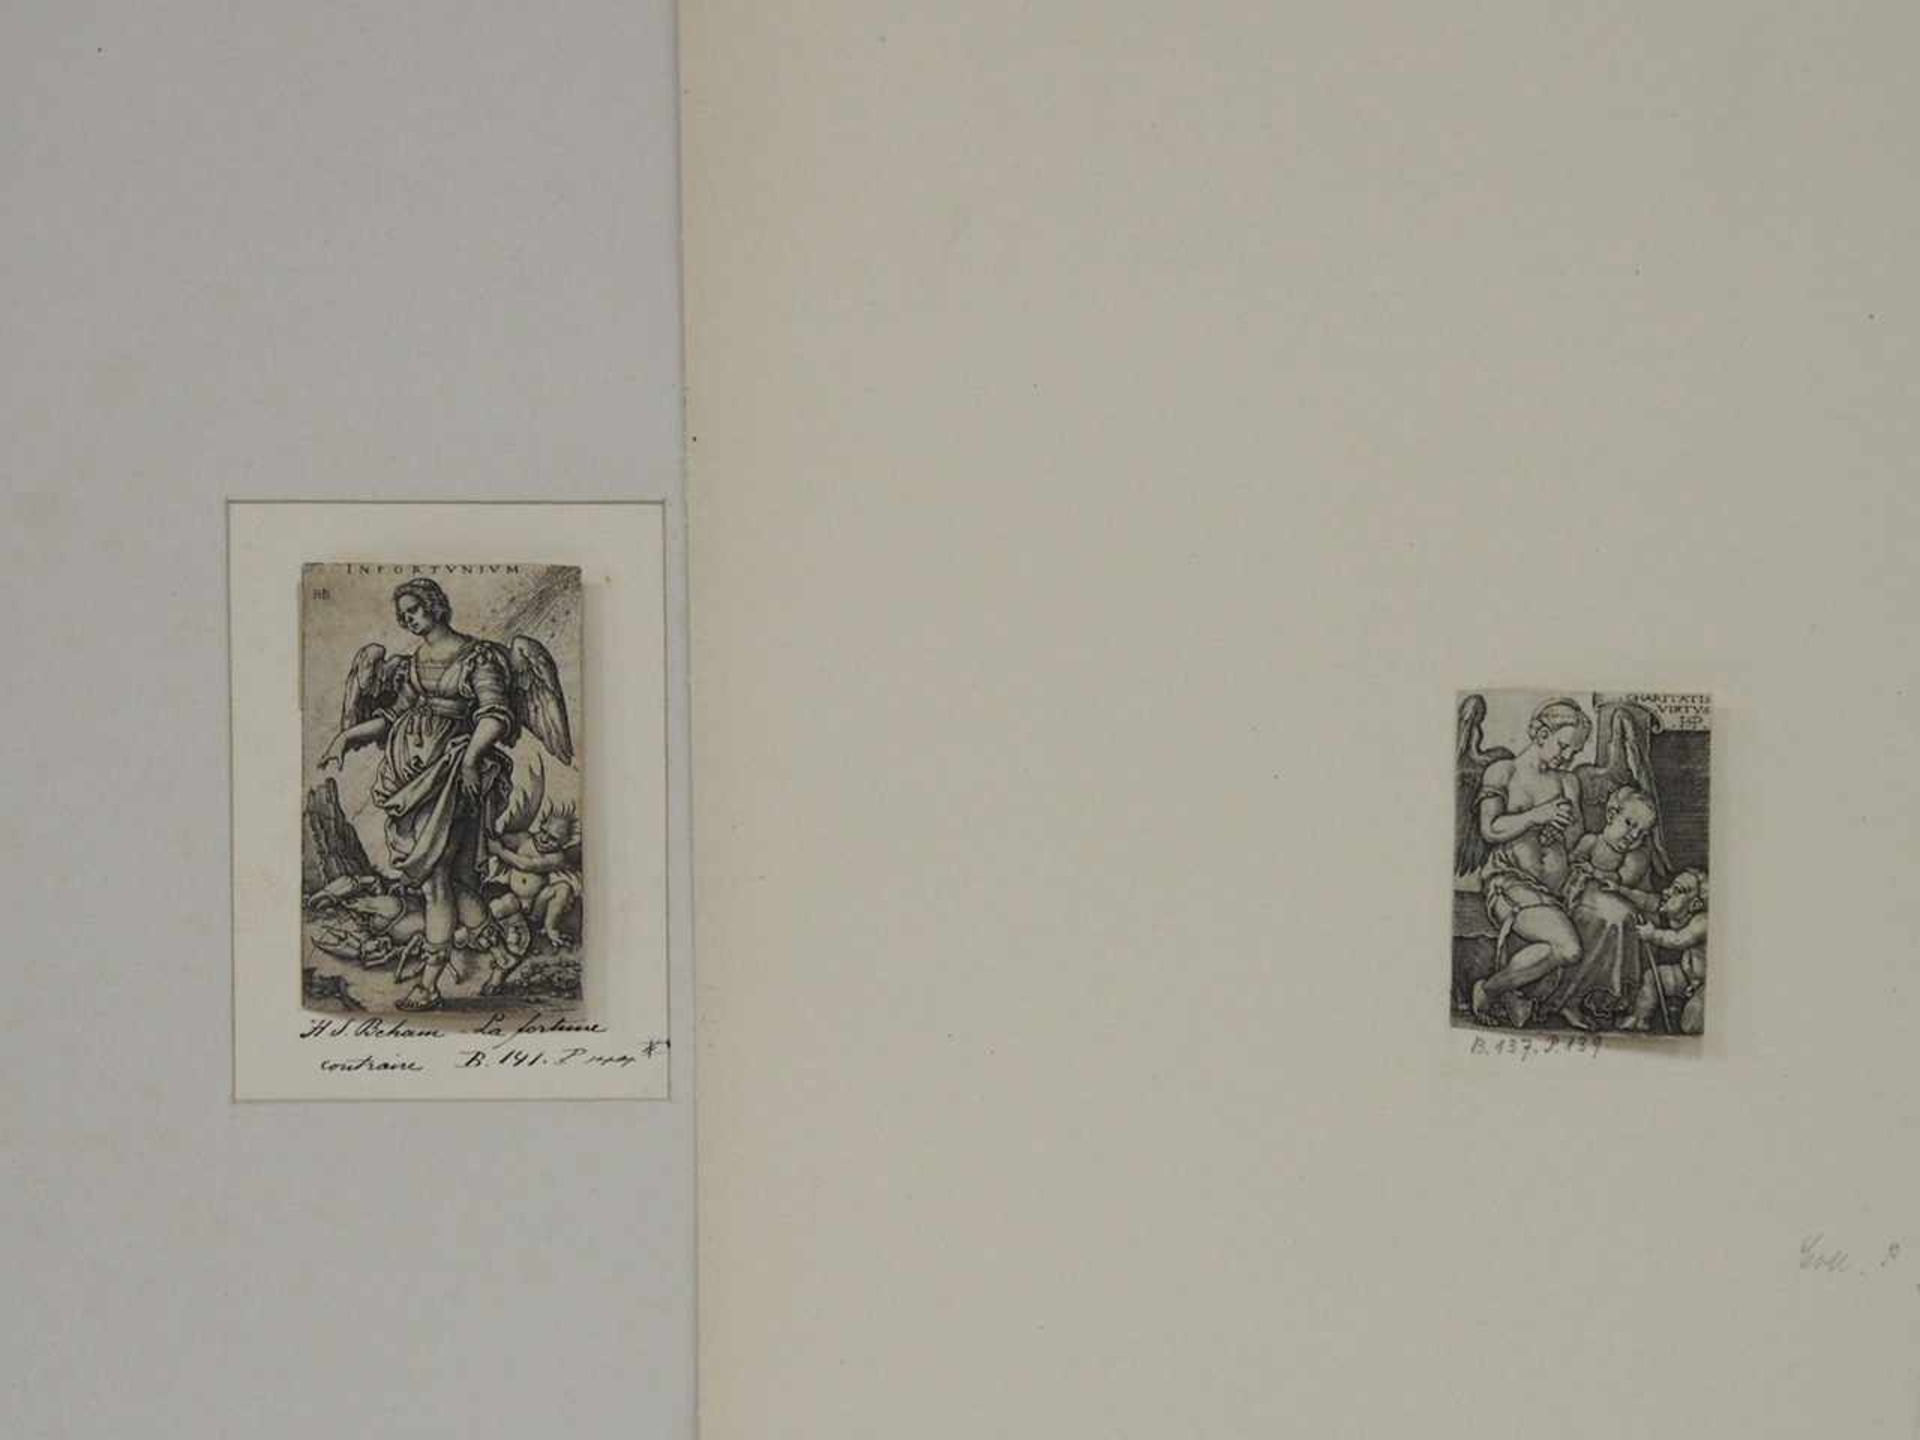 BEHAM, Hans1500-1550Charita virtus / InfortuniumKupferstiche, bis zu 8 x 5 cm, montiert im Klapp-